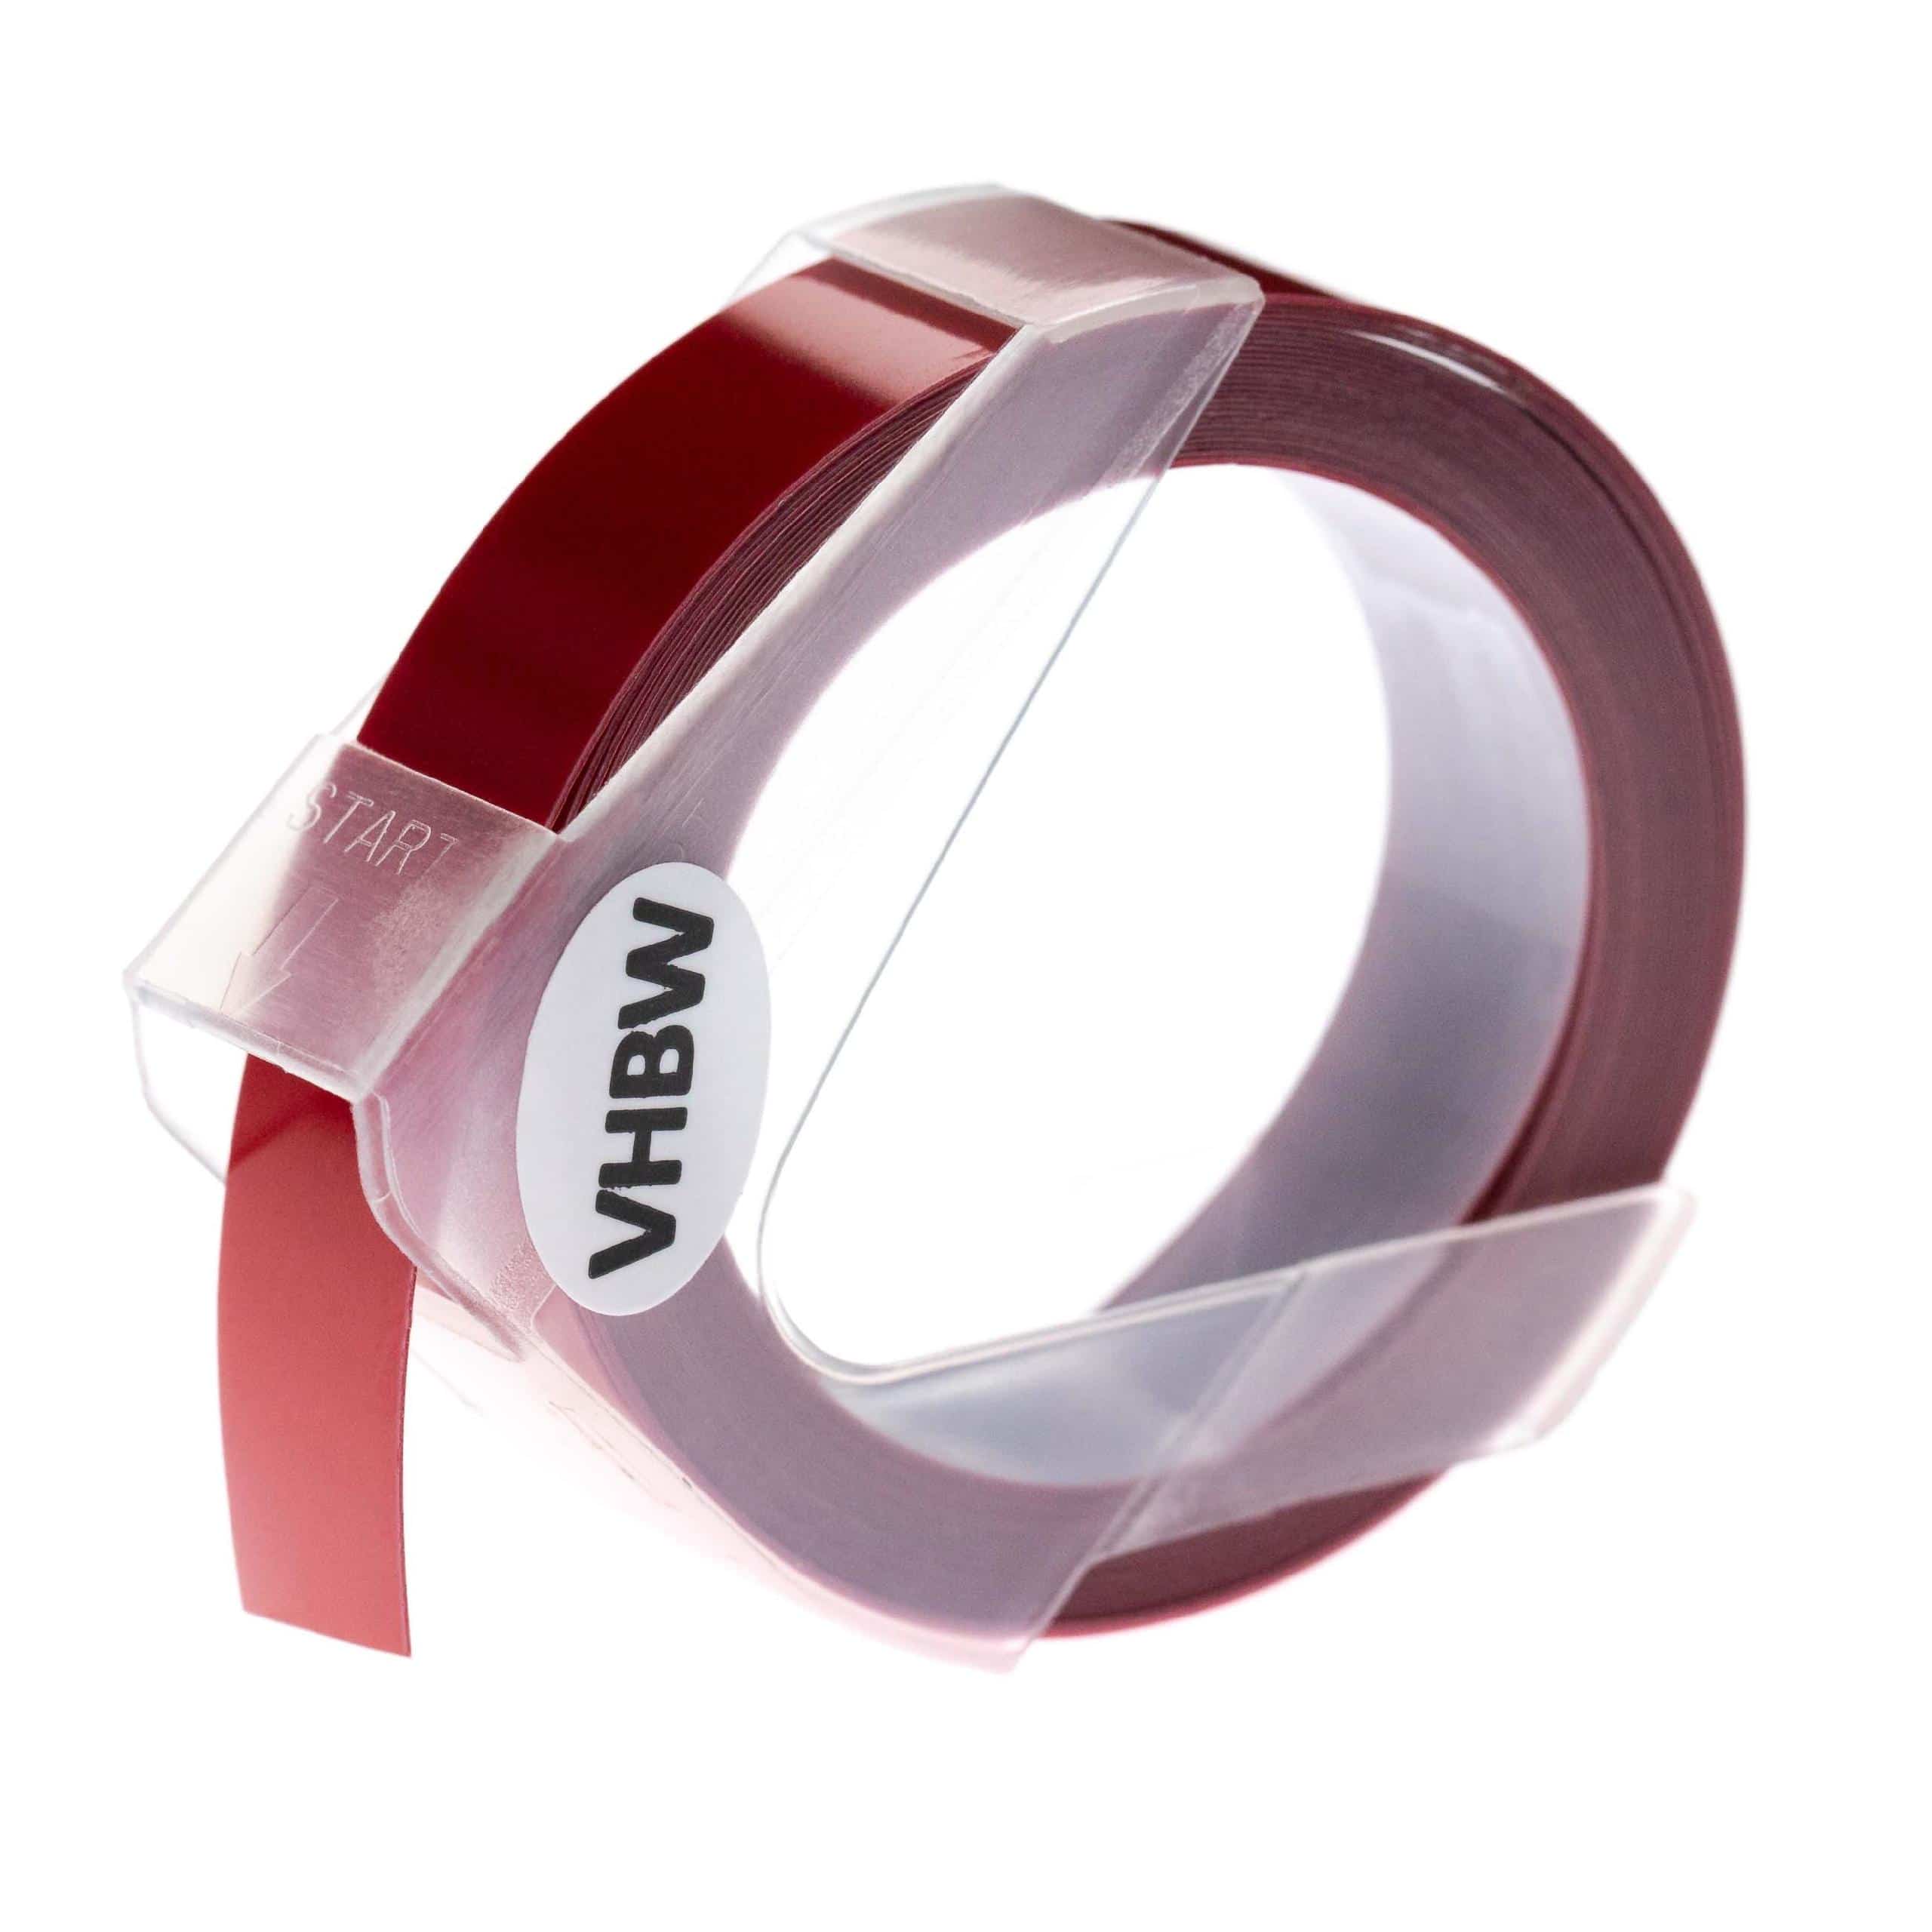 Nastro goffratura 3D sostituisce Dymo 0898152 per etichettatrice Dymo 12mm bianco su rosso